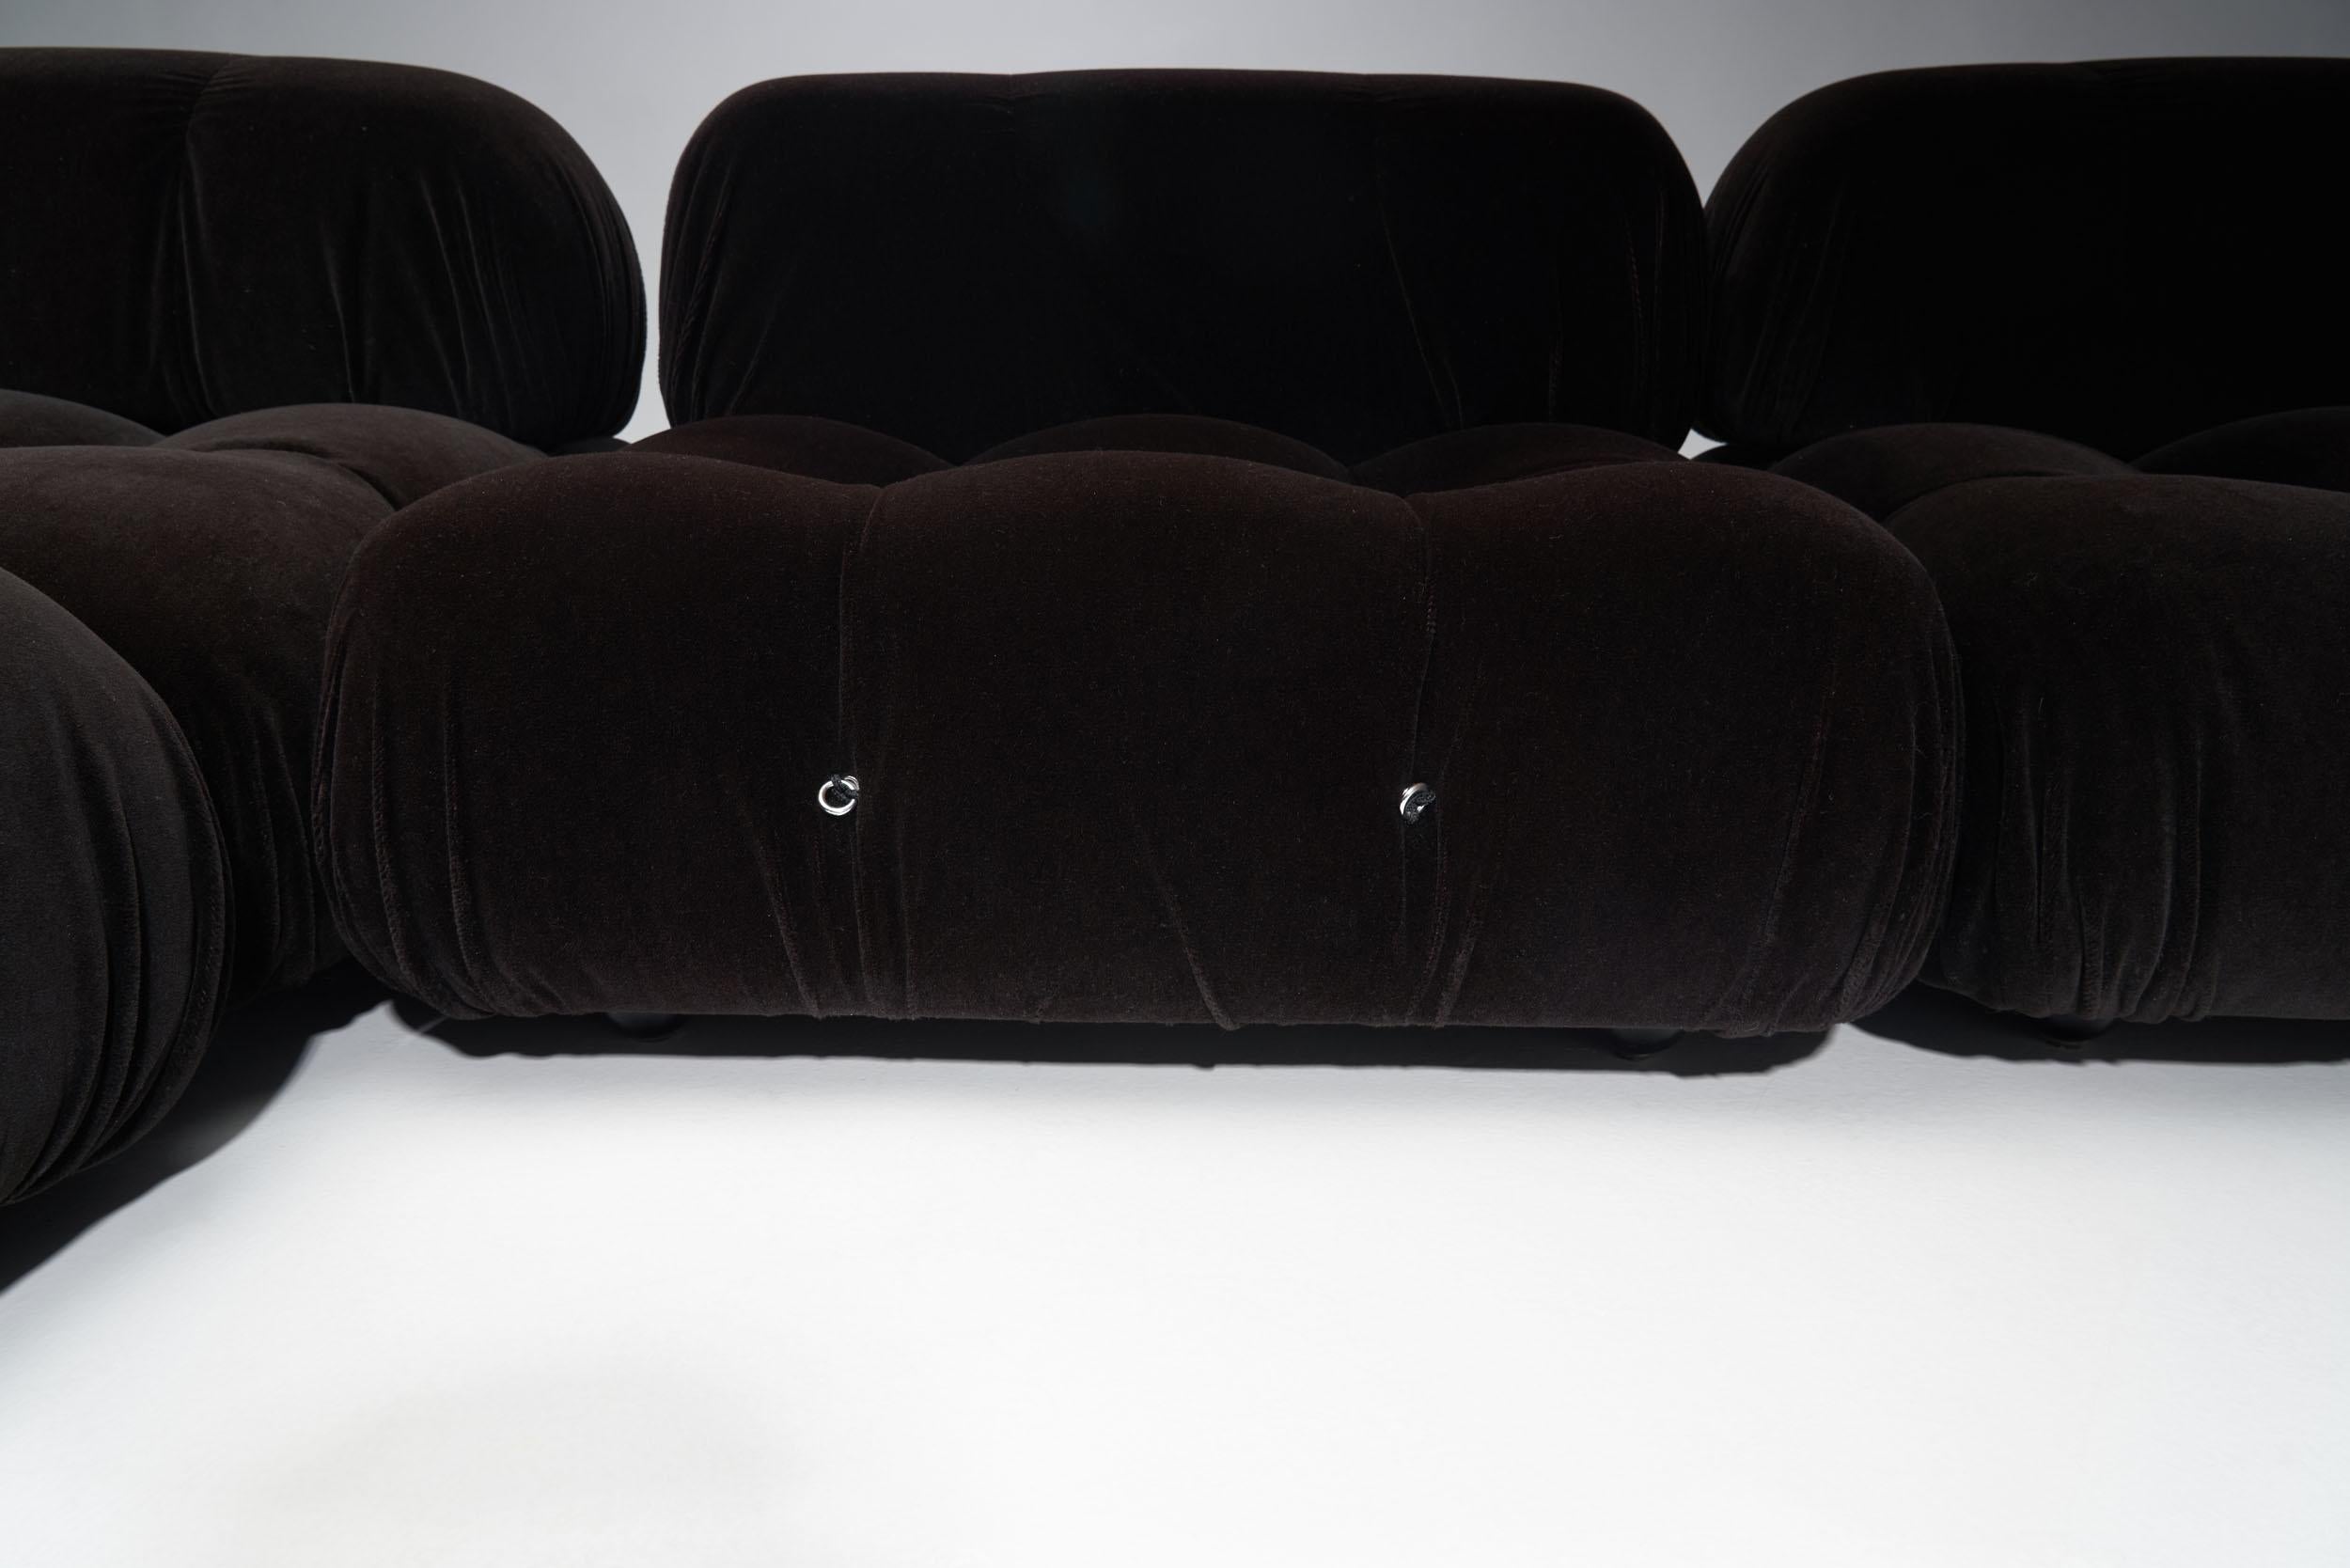 Dark “Camaleonda” Modular Sofa in 4 Segments by Mario Bellini for B&B, Italy 197 3